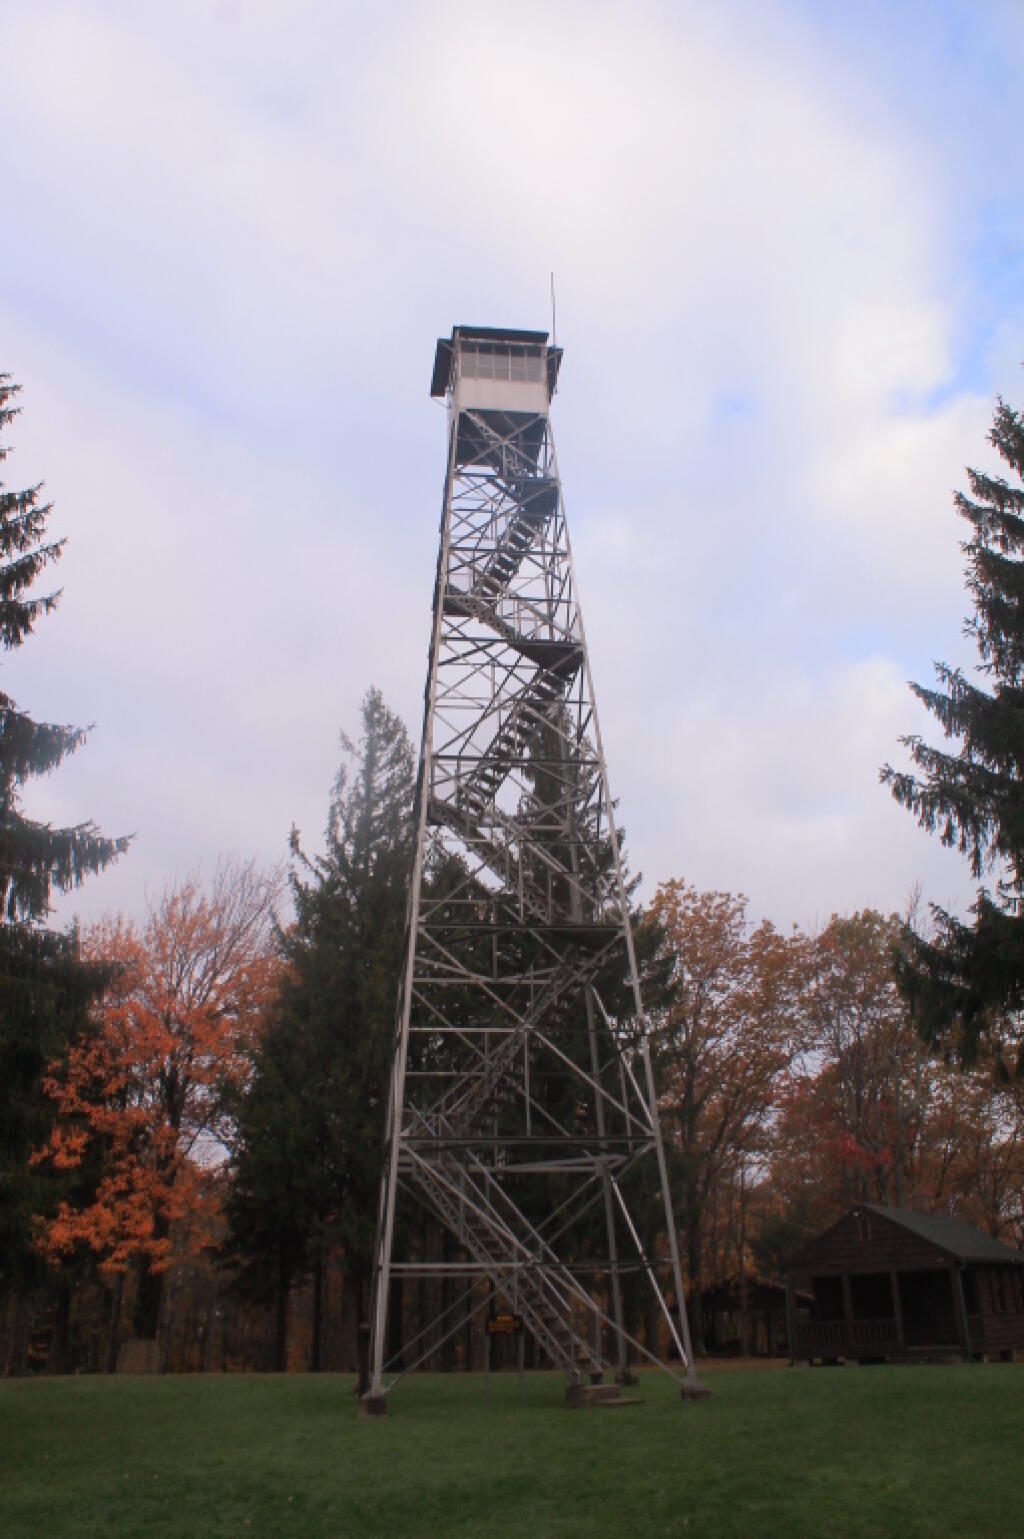 The Firetower